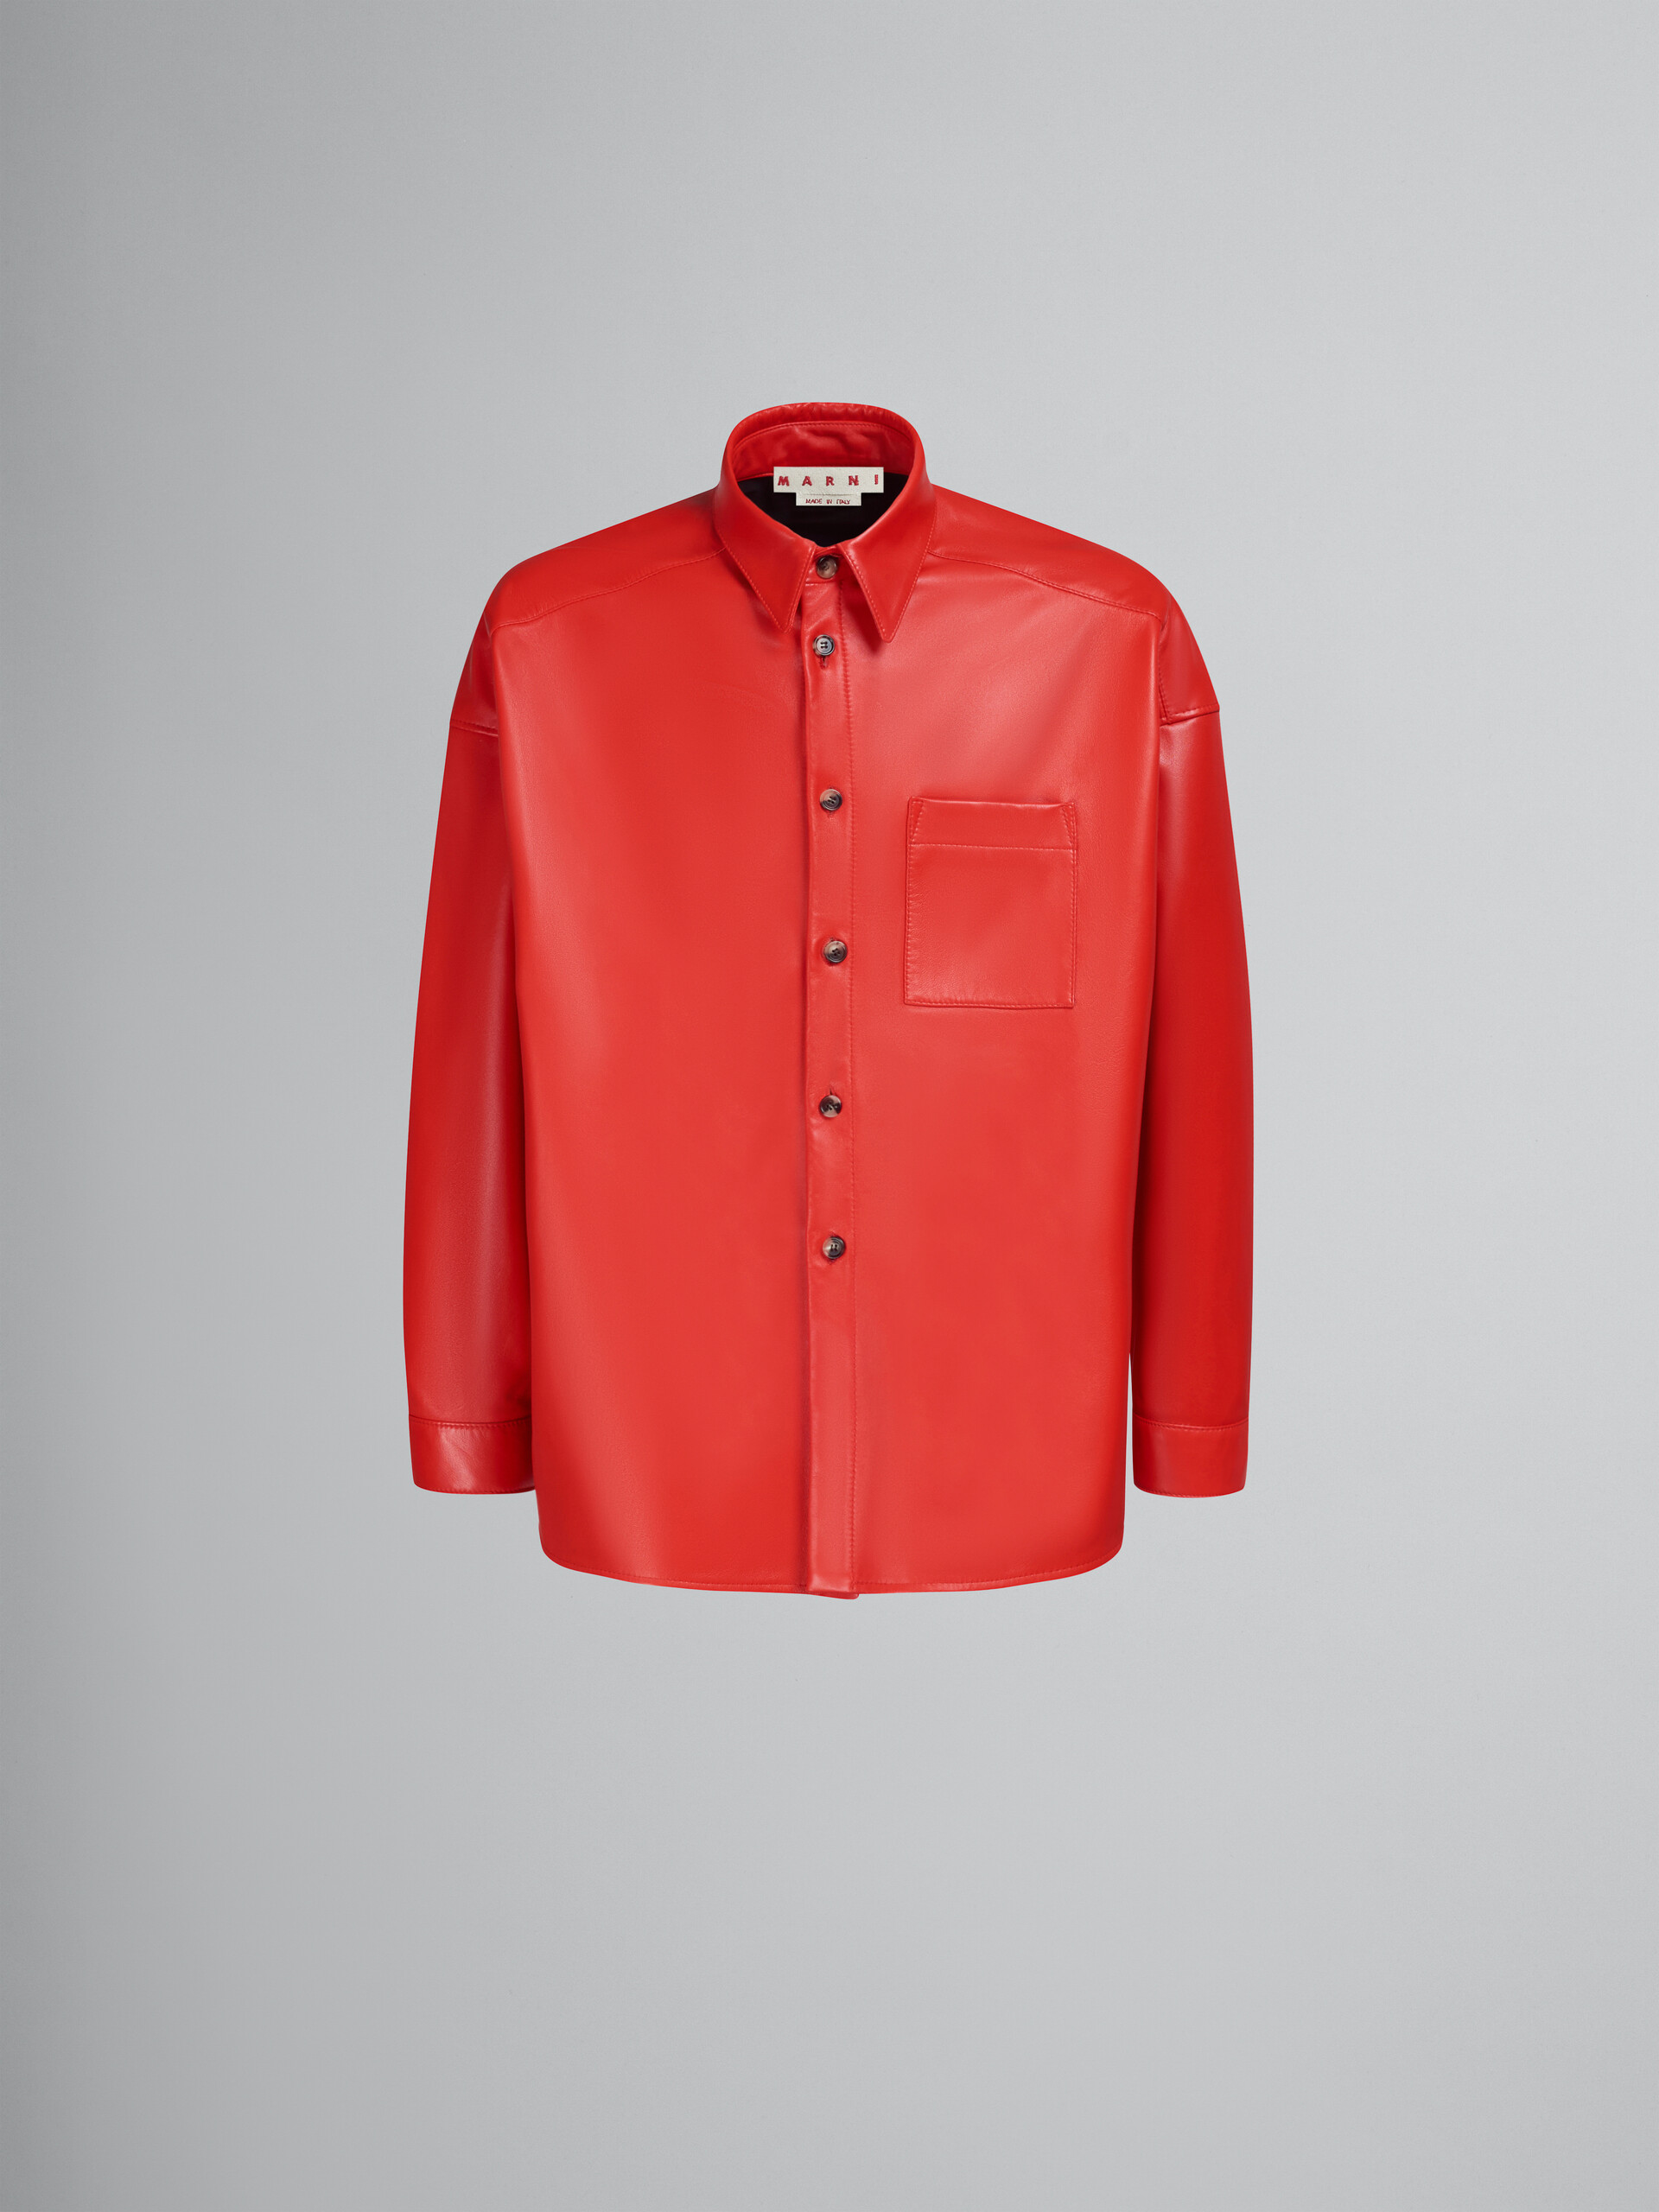 Camisa roja de piel de napa - Camisas - Image 1